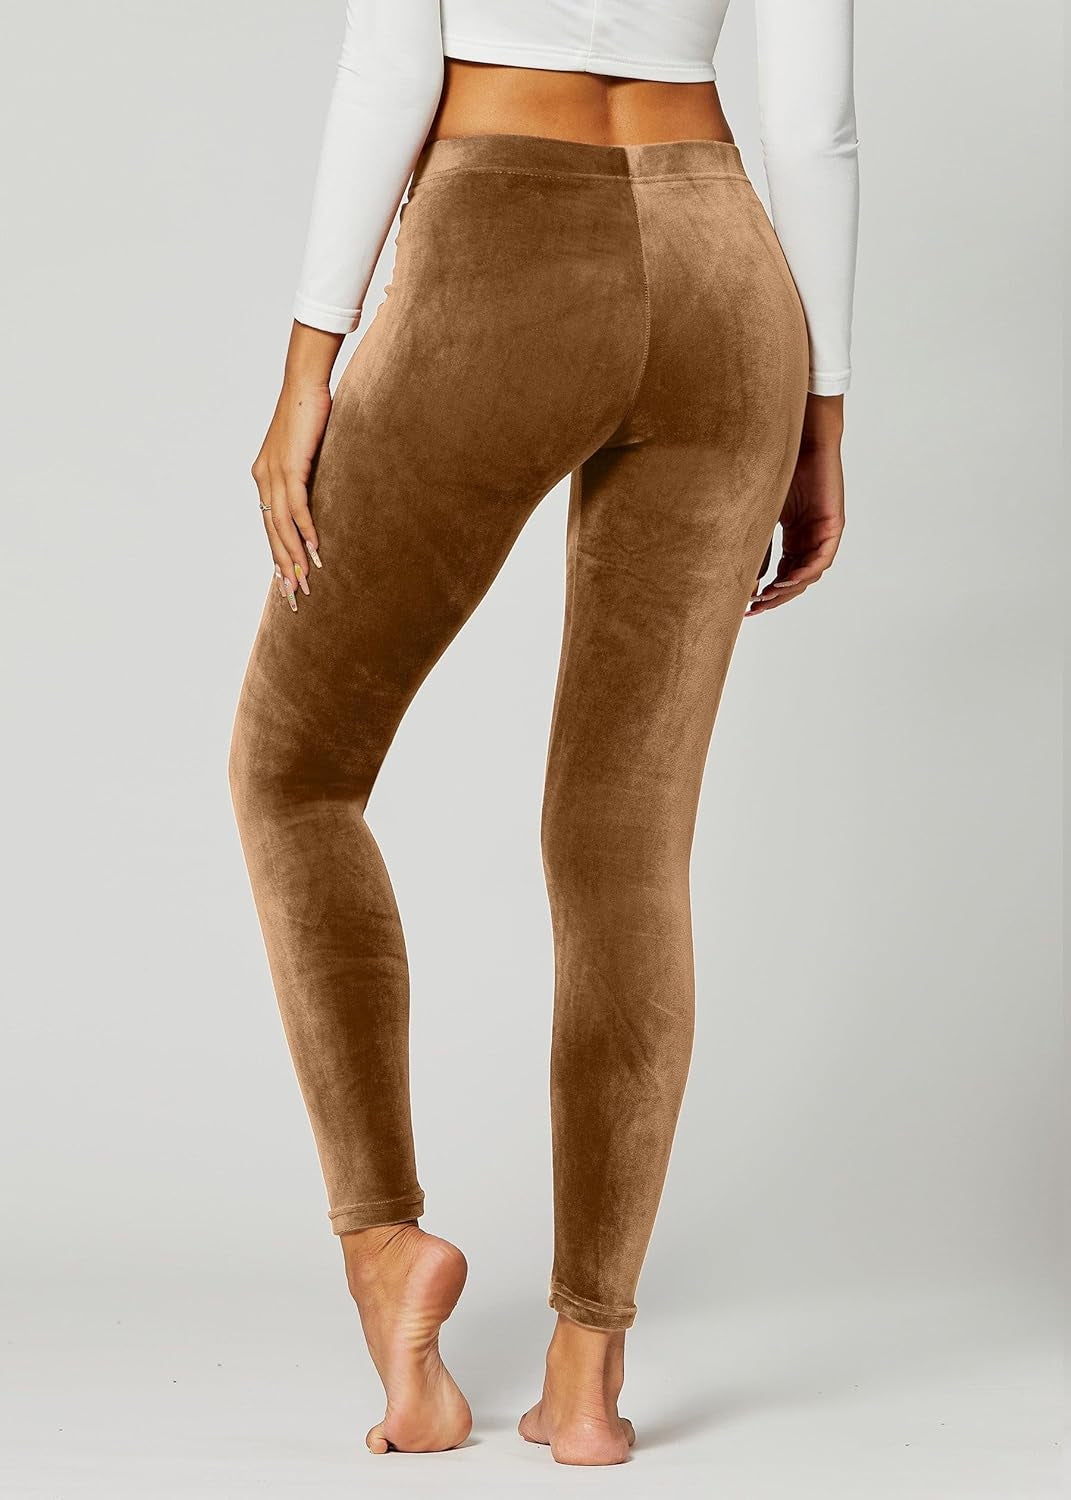 Premium Velvet Leggings for Women - Ultra-Soft Warm Velour Pants